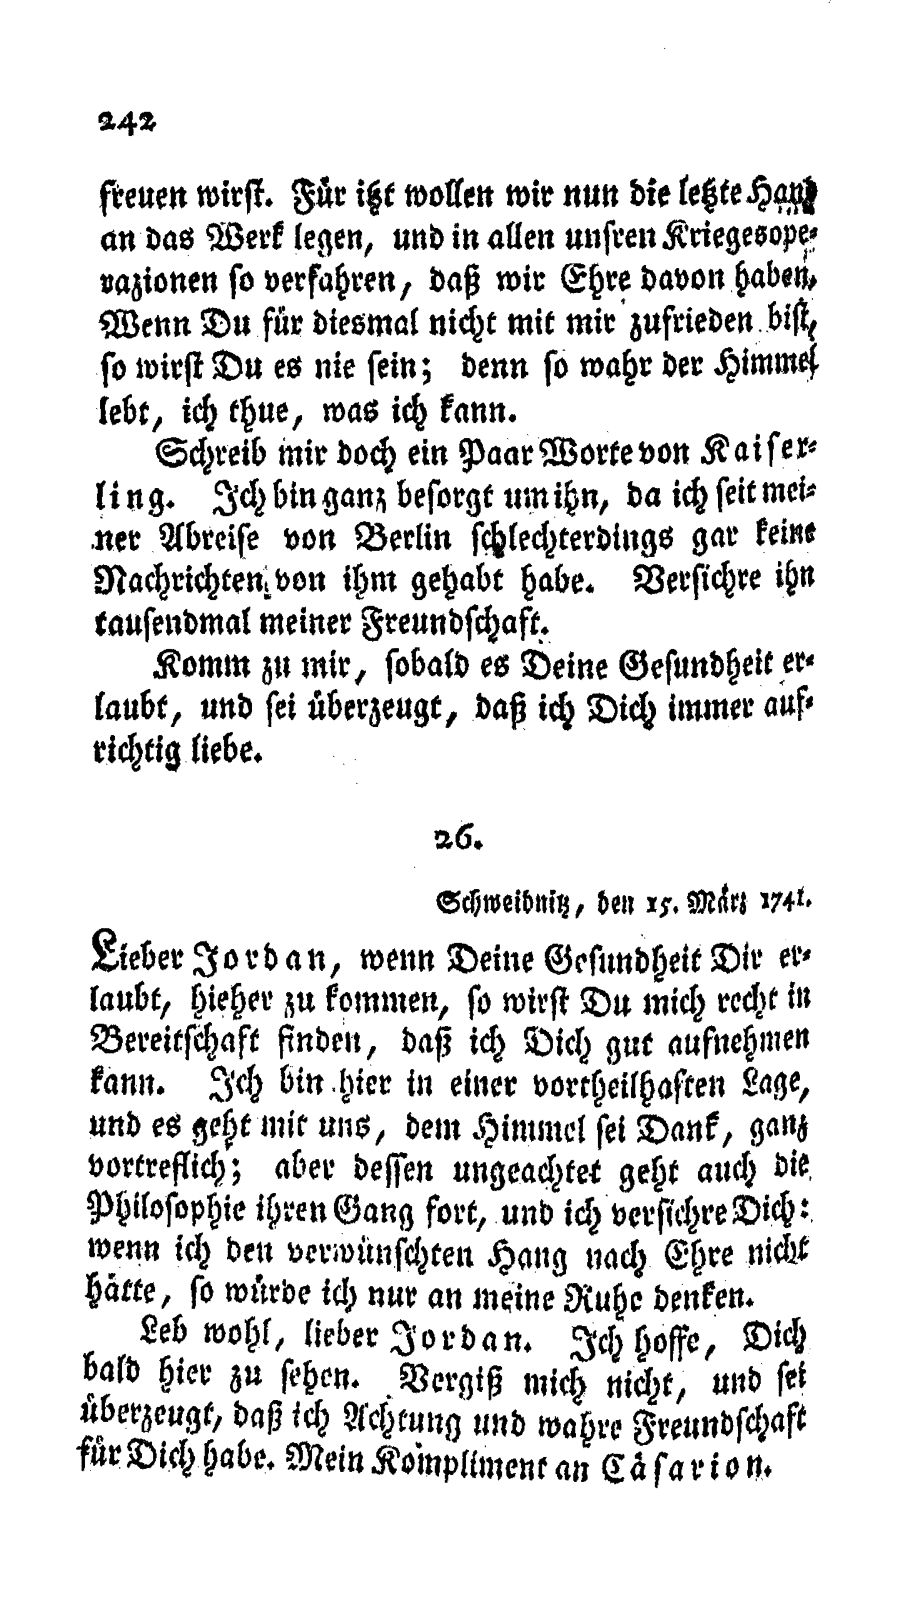 S. 242, Obj. 2